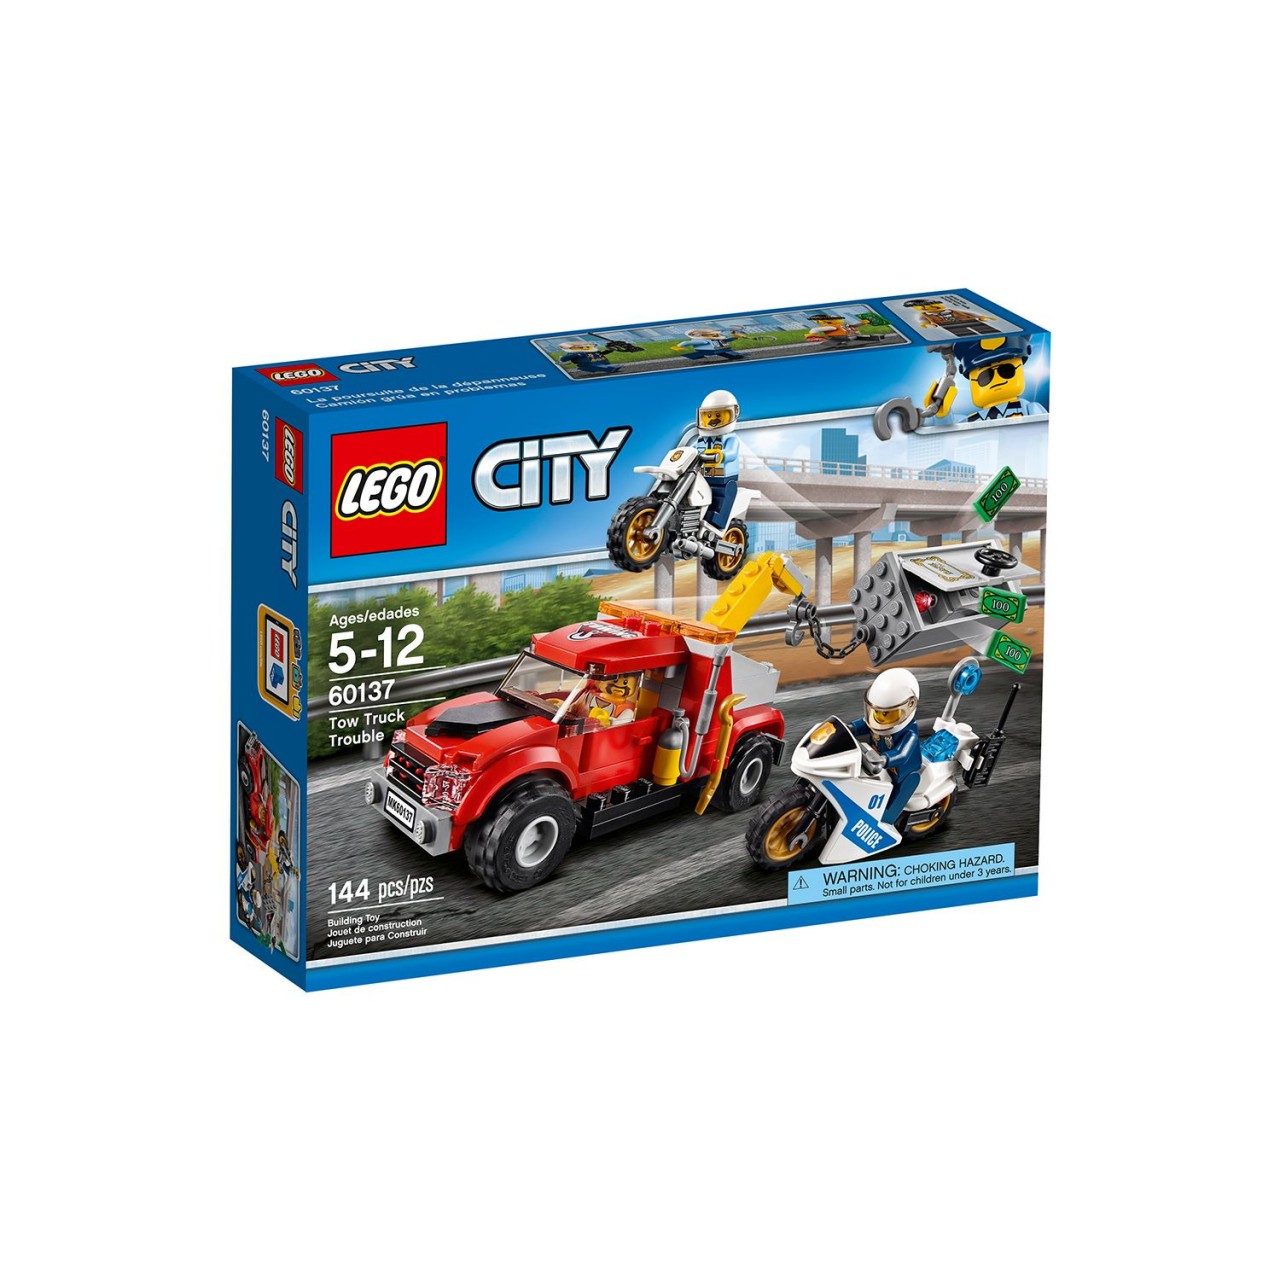 LEGO CITY 60137 Abschleppwagen auf Abwegen